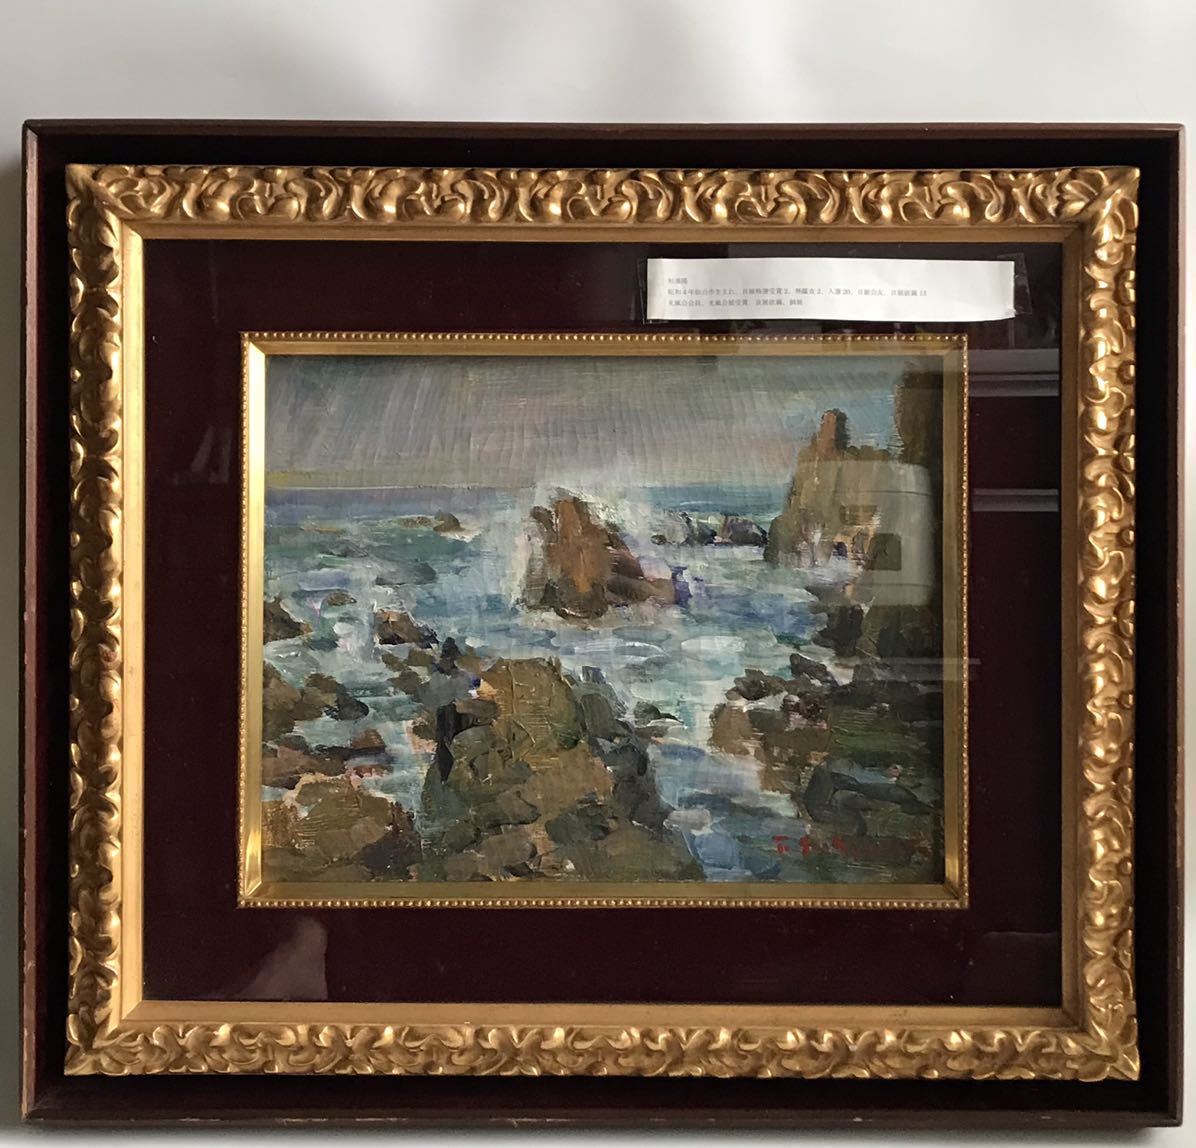 [Valiente] Takashi Sugiura/[Mar de Hokuriku]/Naturaleza/Pintura de paisaje/Pintura al óleo/Pintura al óleo/Pintura, cuadro, pintura al óleo, Naturaleza, Pintura de paisaje